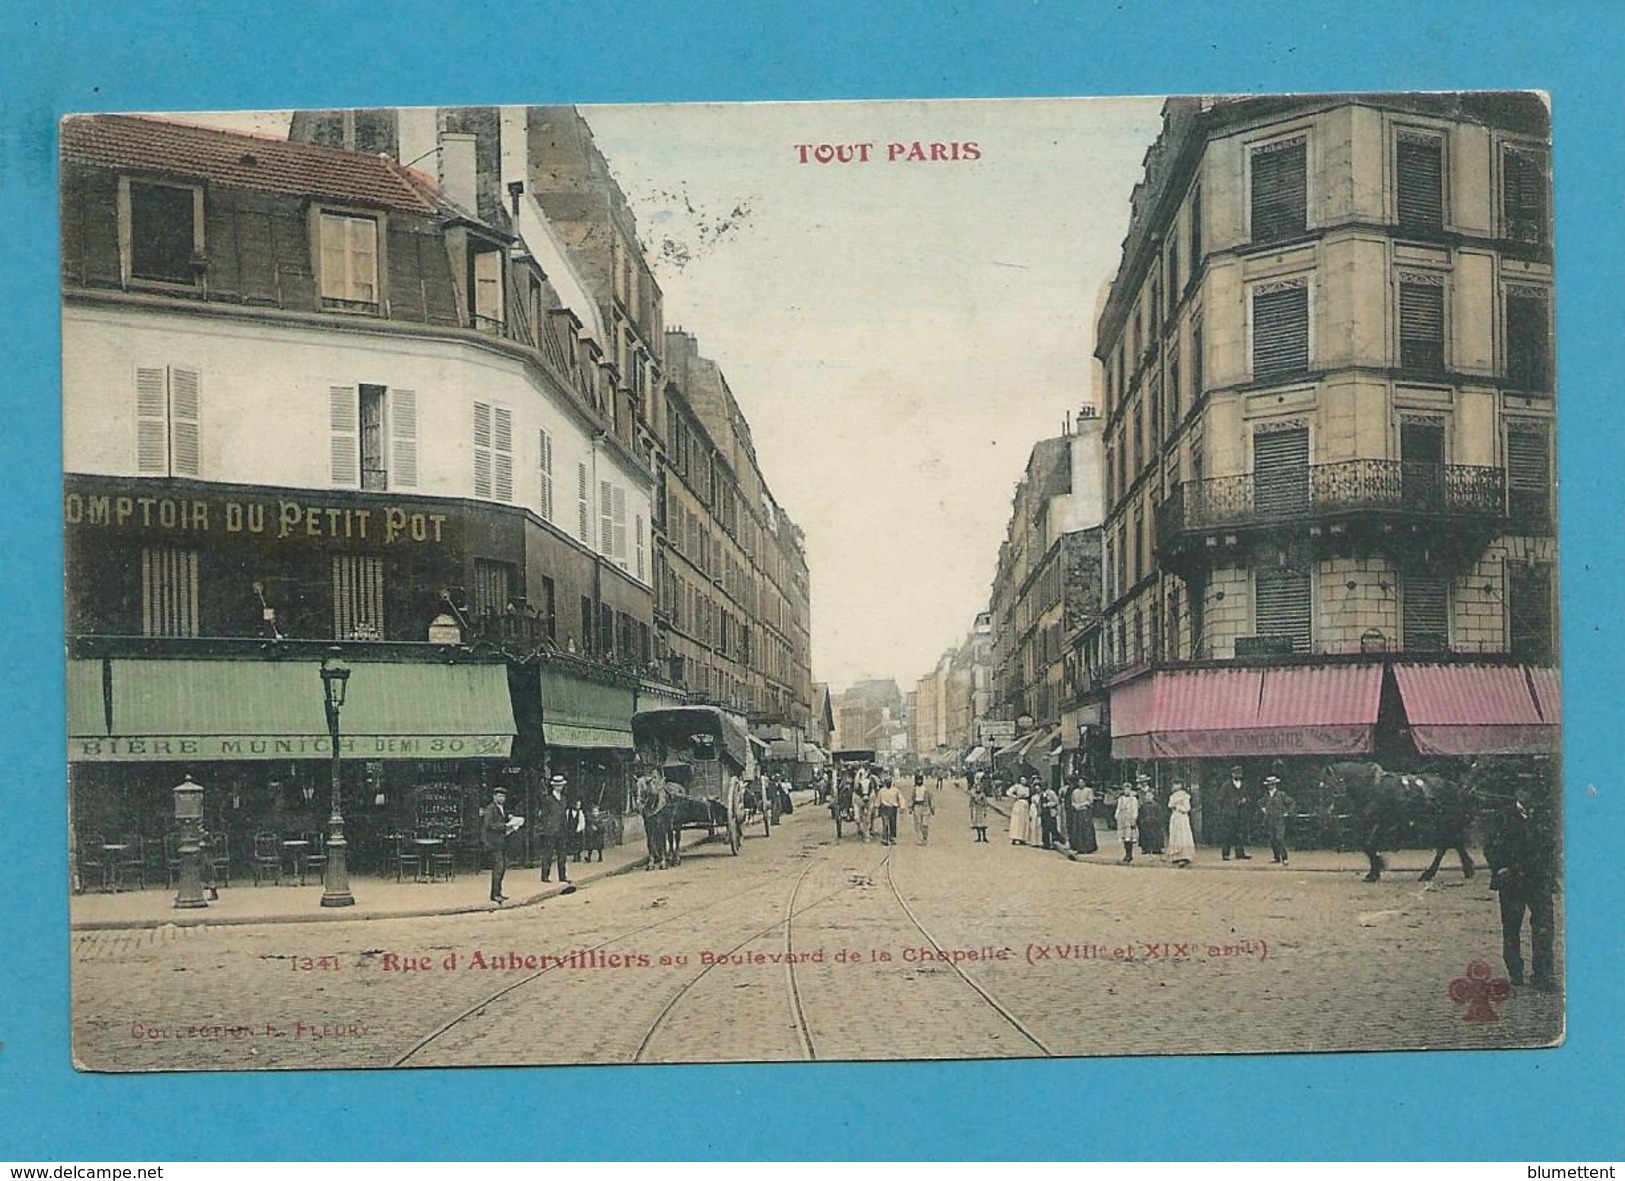 CPA TOUT PARIS 1341 - Rue D'Aubervilliers (XVIIIème Arrt.) Ed. FLEURY - Distrito: 18